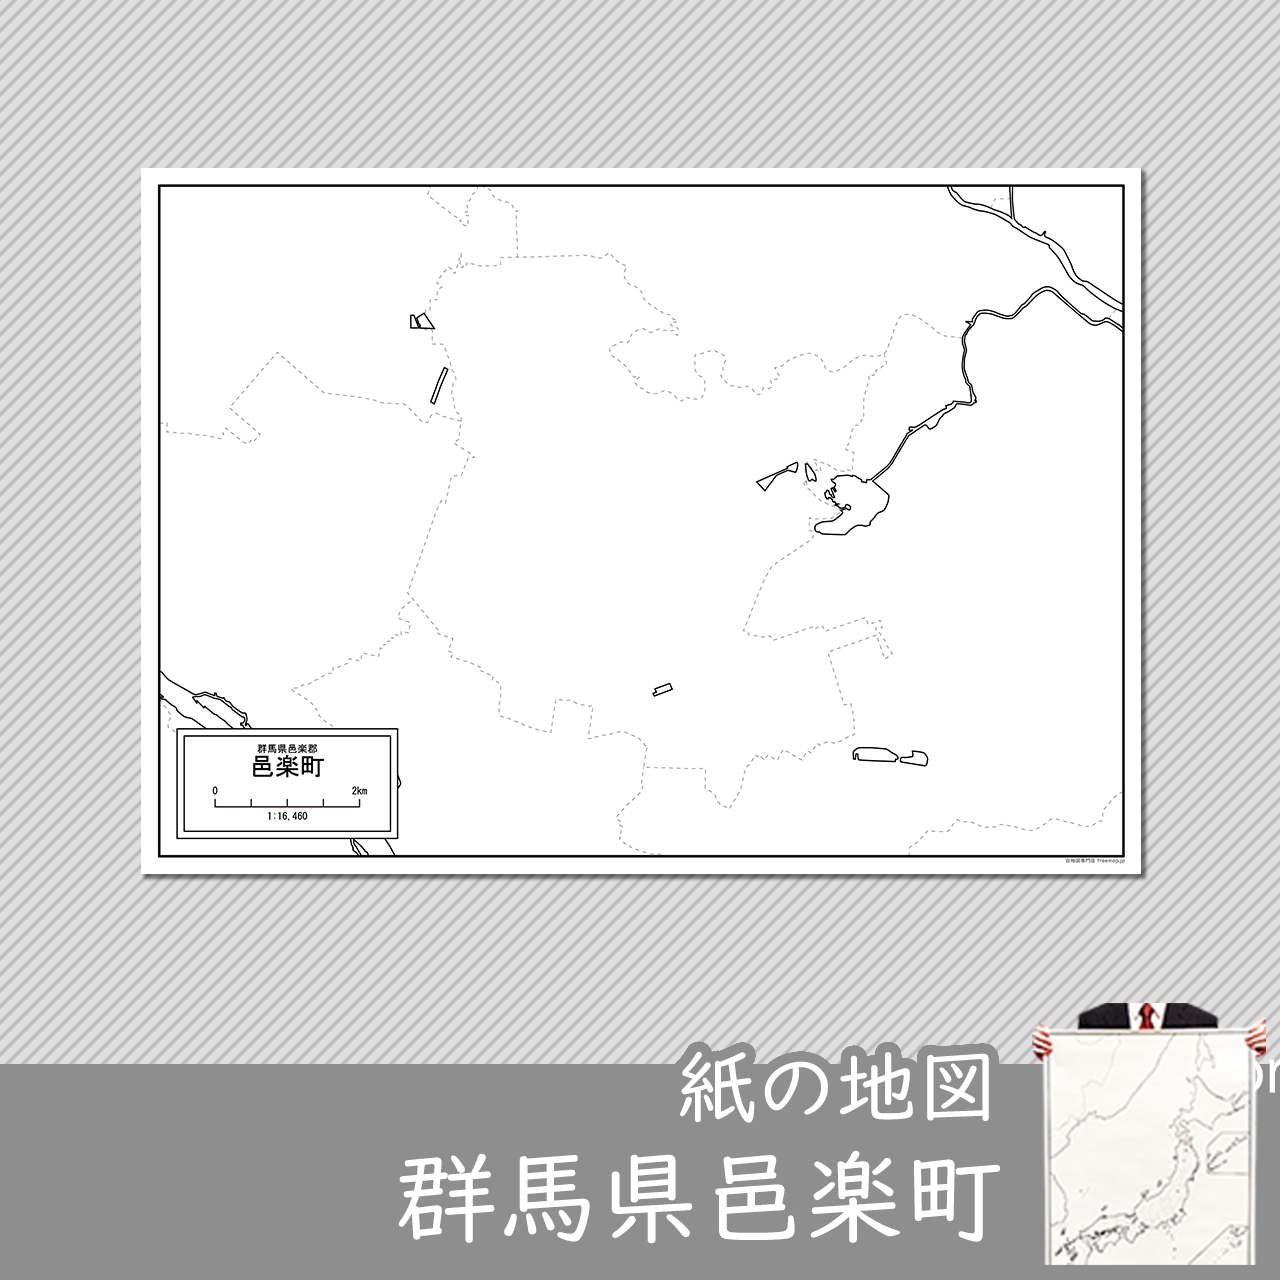 邑楽町の紙の白地図のサムネイル